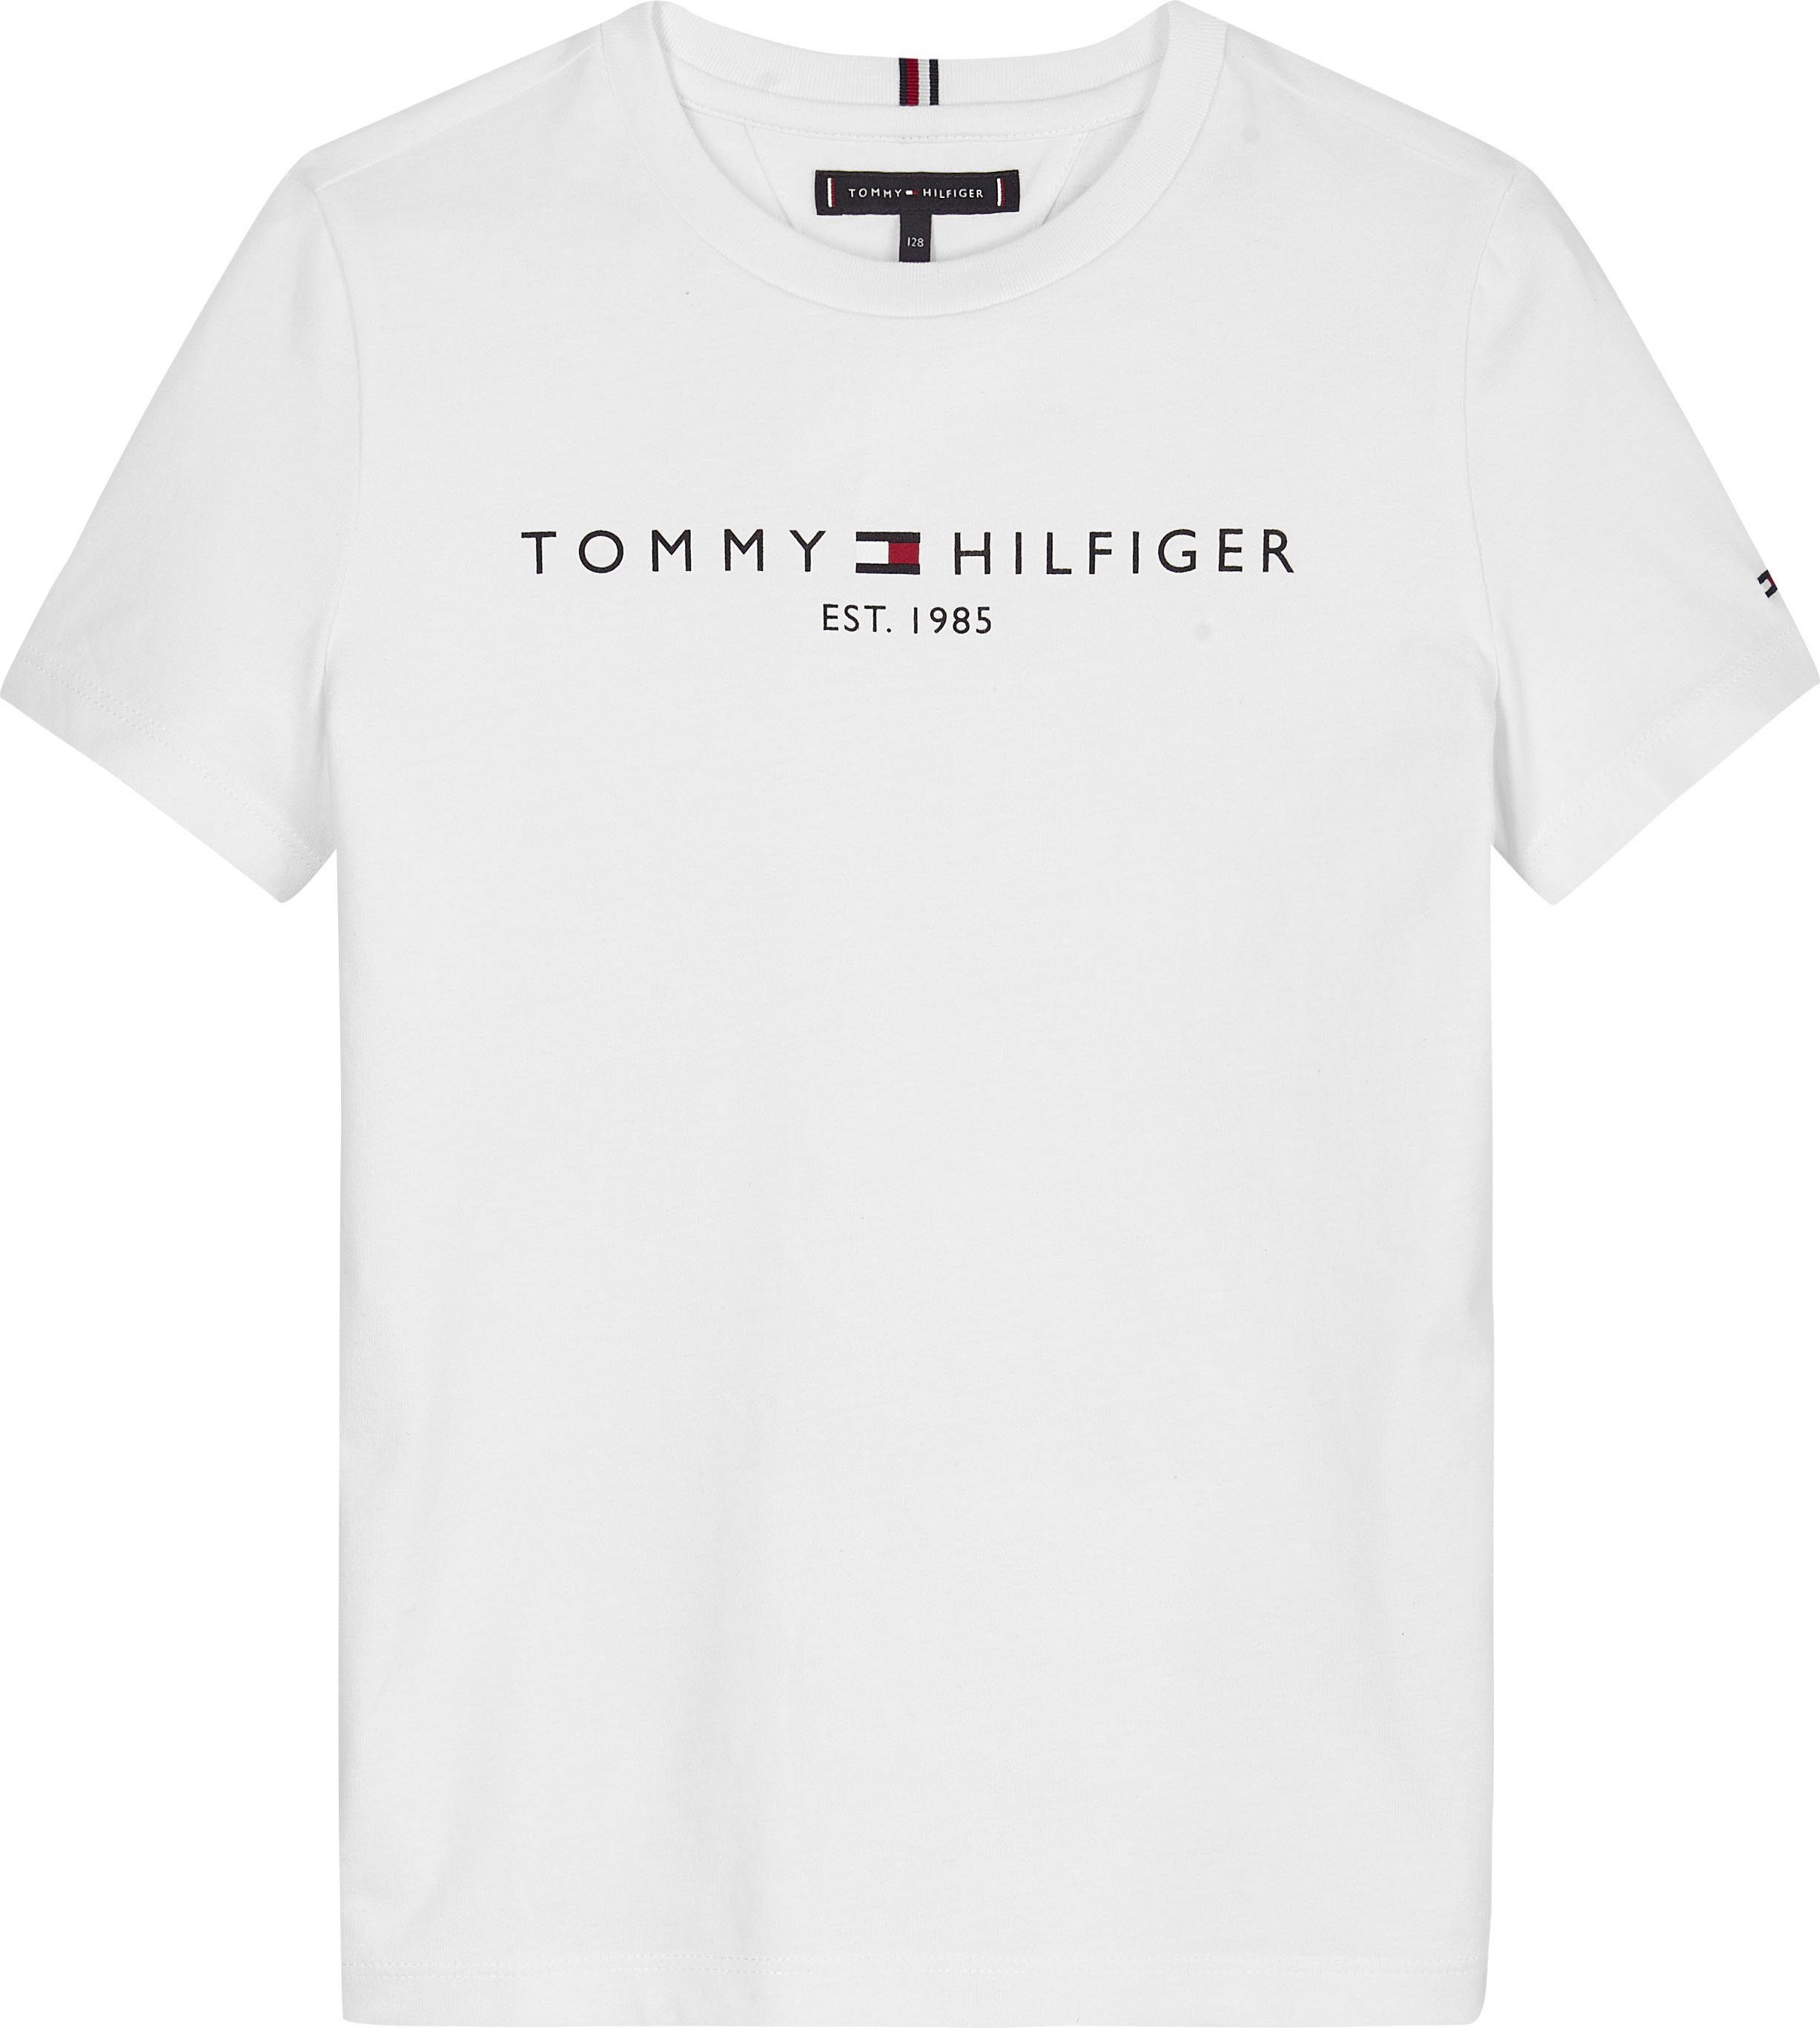 Tommy Hilfiger und ESSENTIAL TEE T-Shirt Kids Mädchen Kinder MiniMe,für Junior Jungen